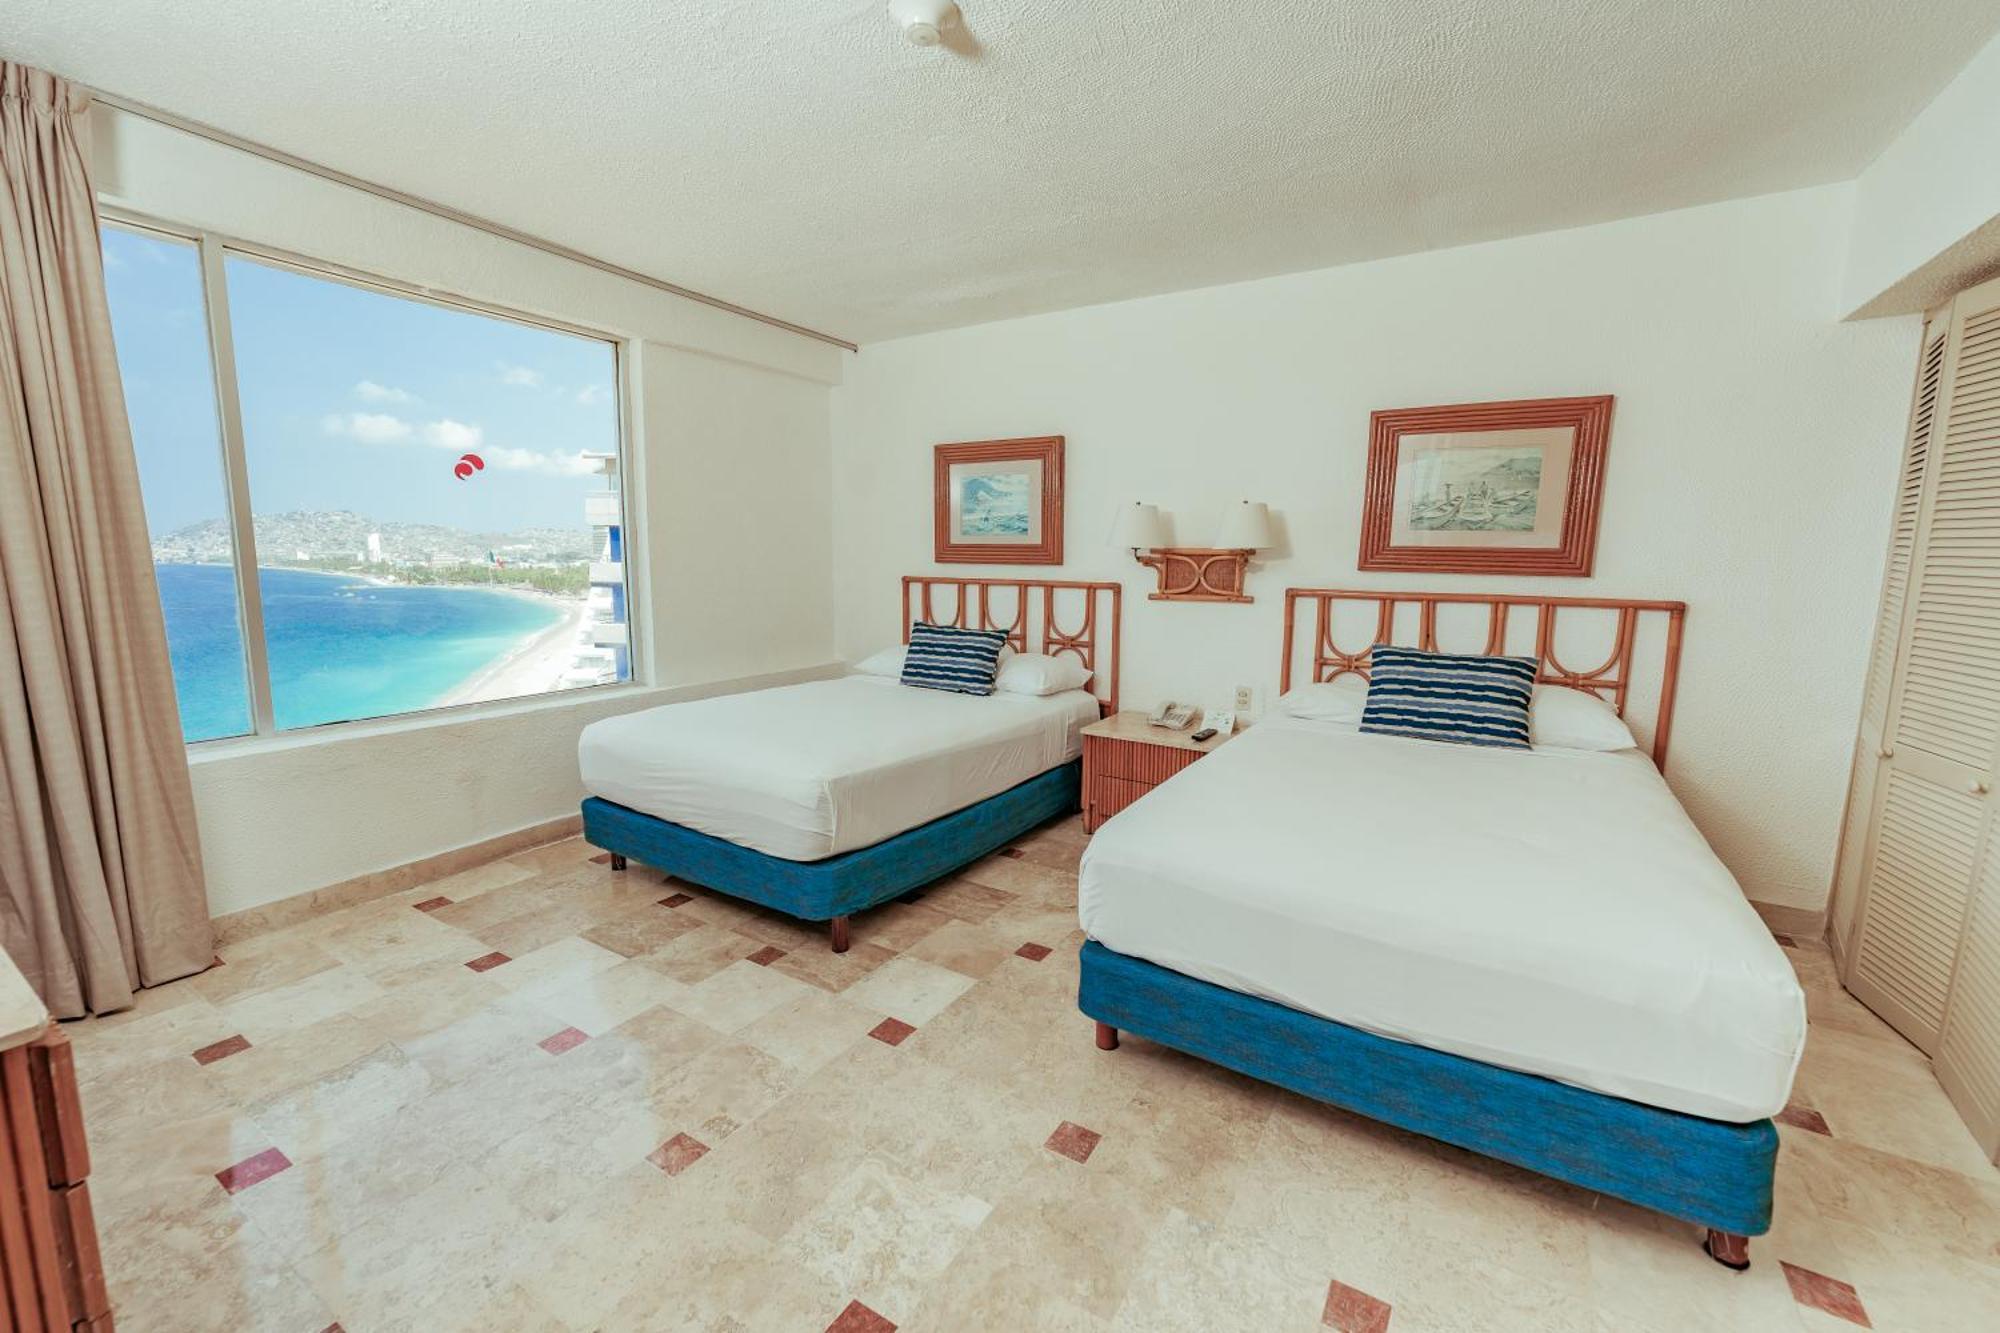 Playa Suites Акапулько Экстерьер фото